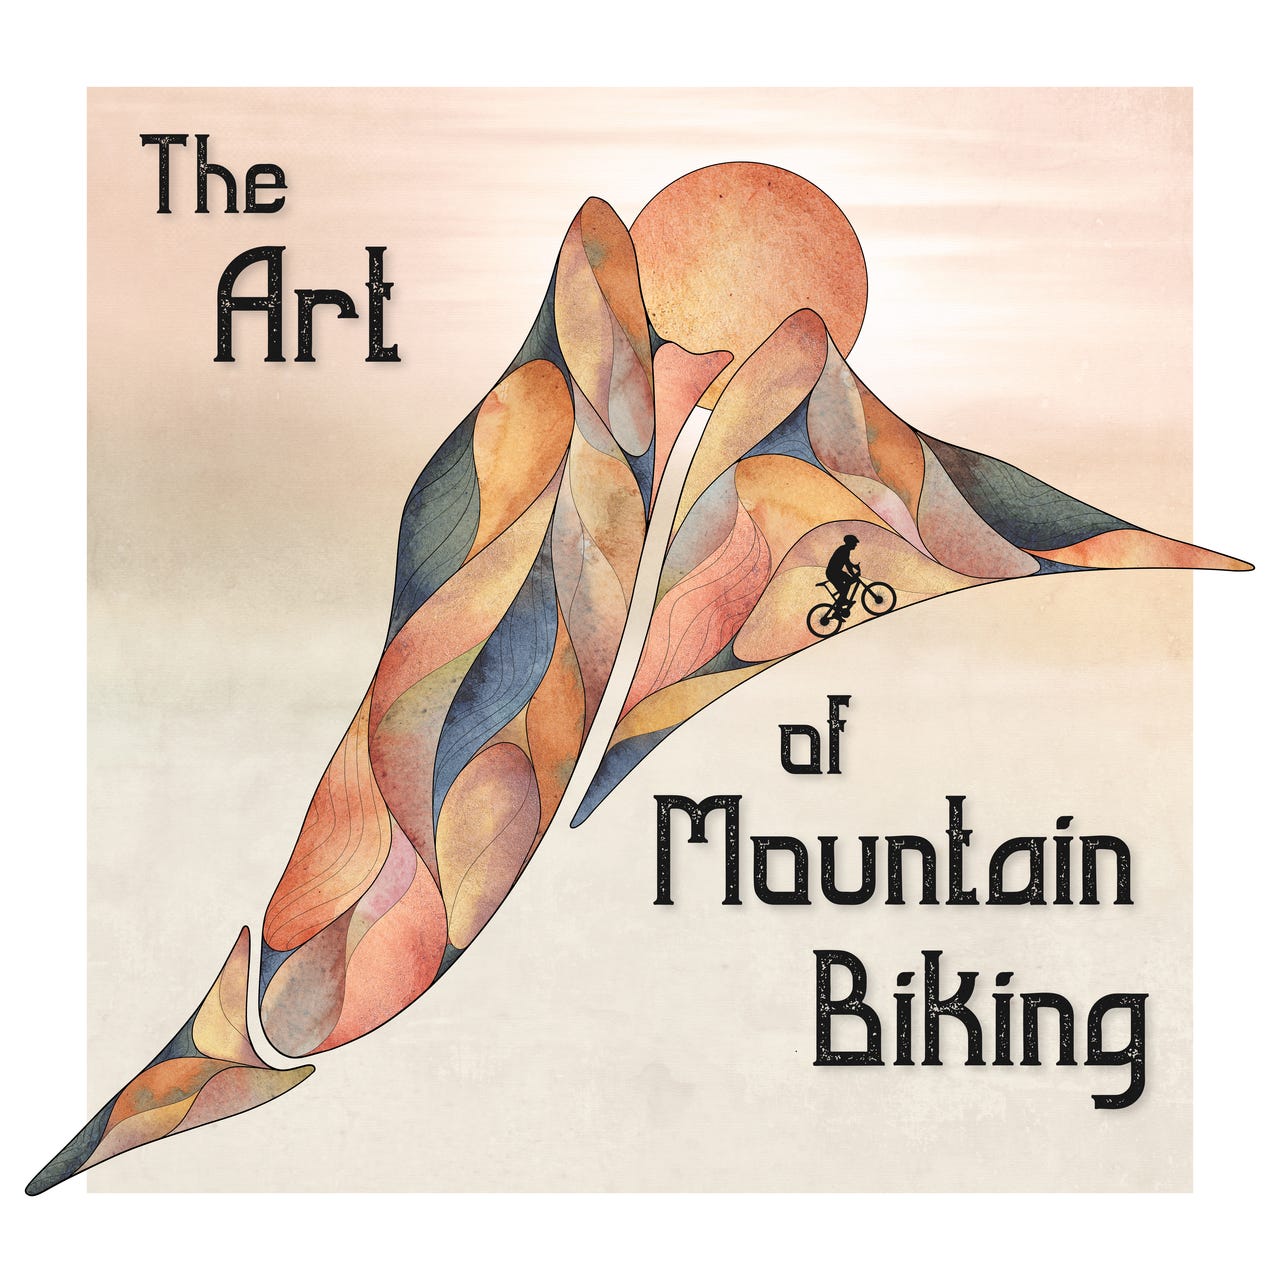 Artwork for The Art of Mountain Biking